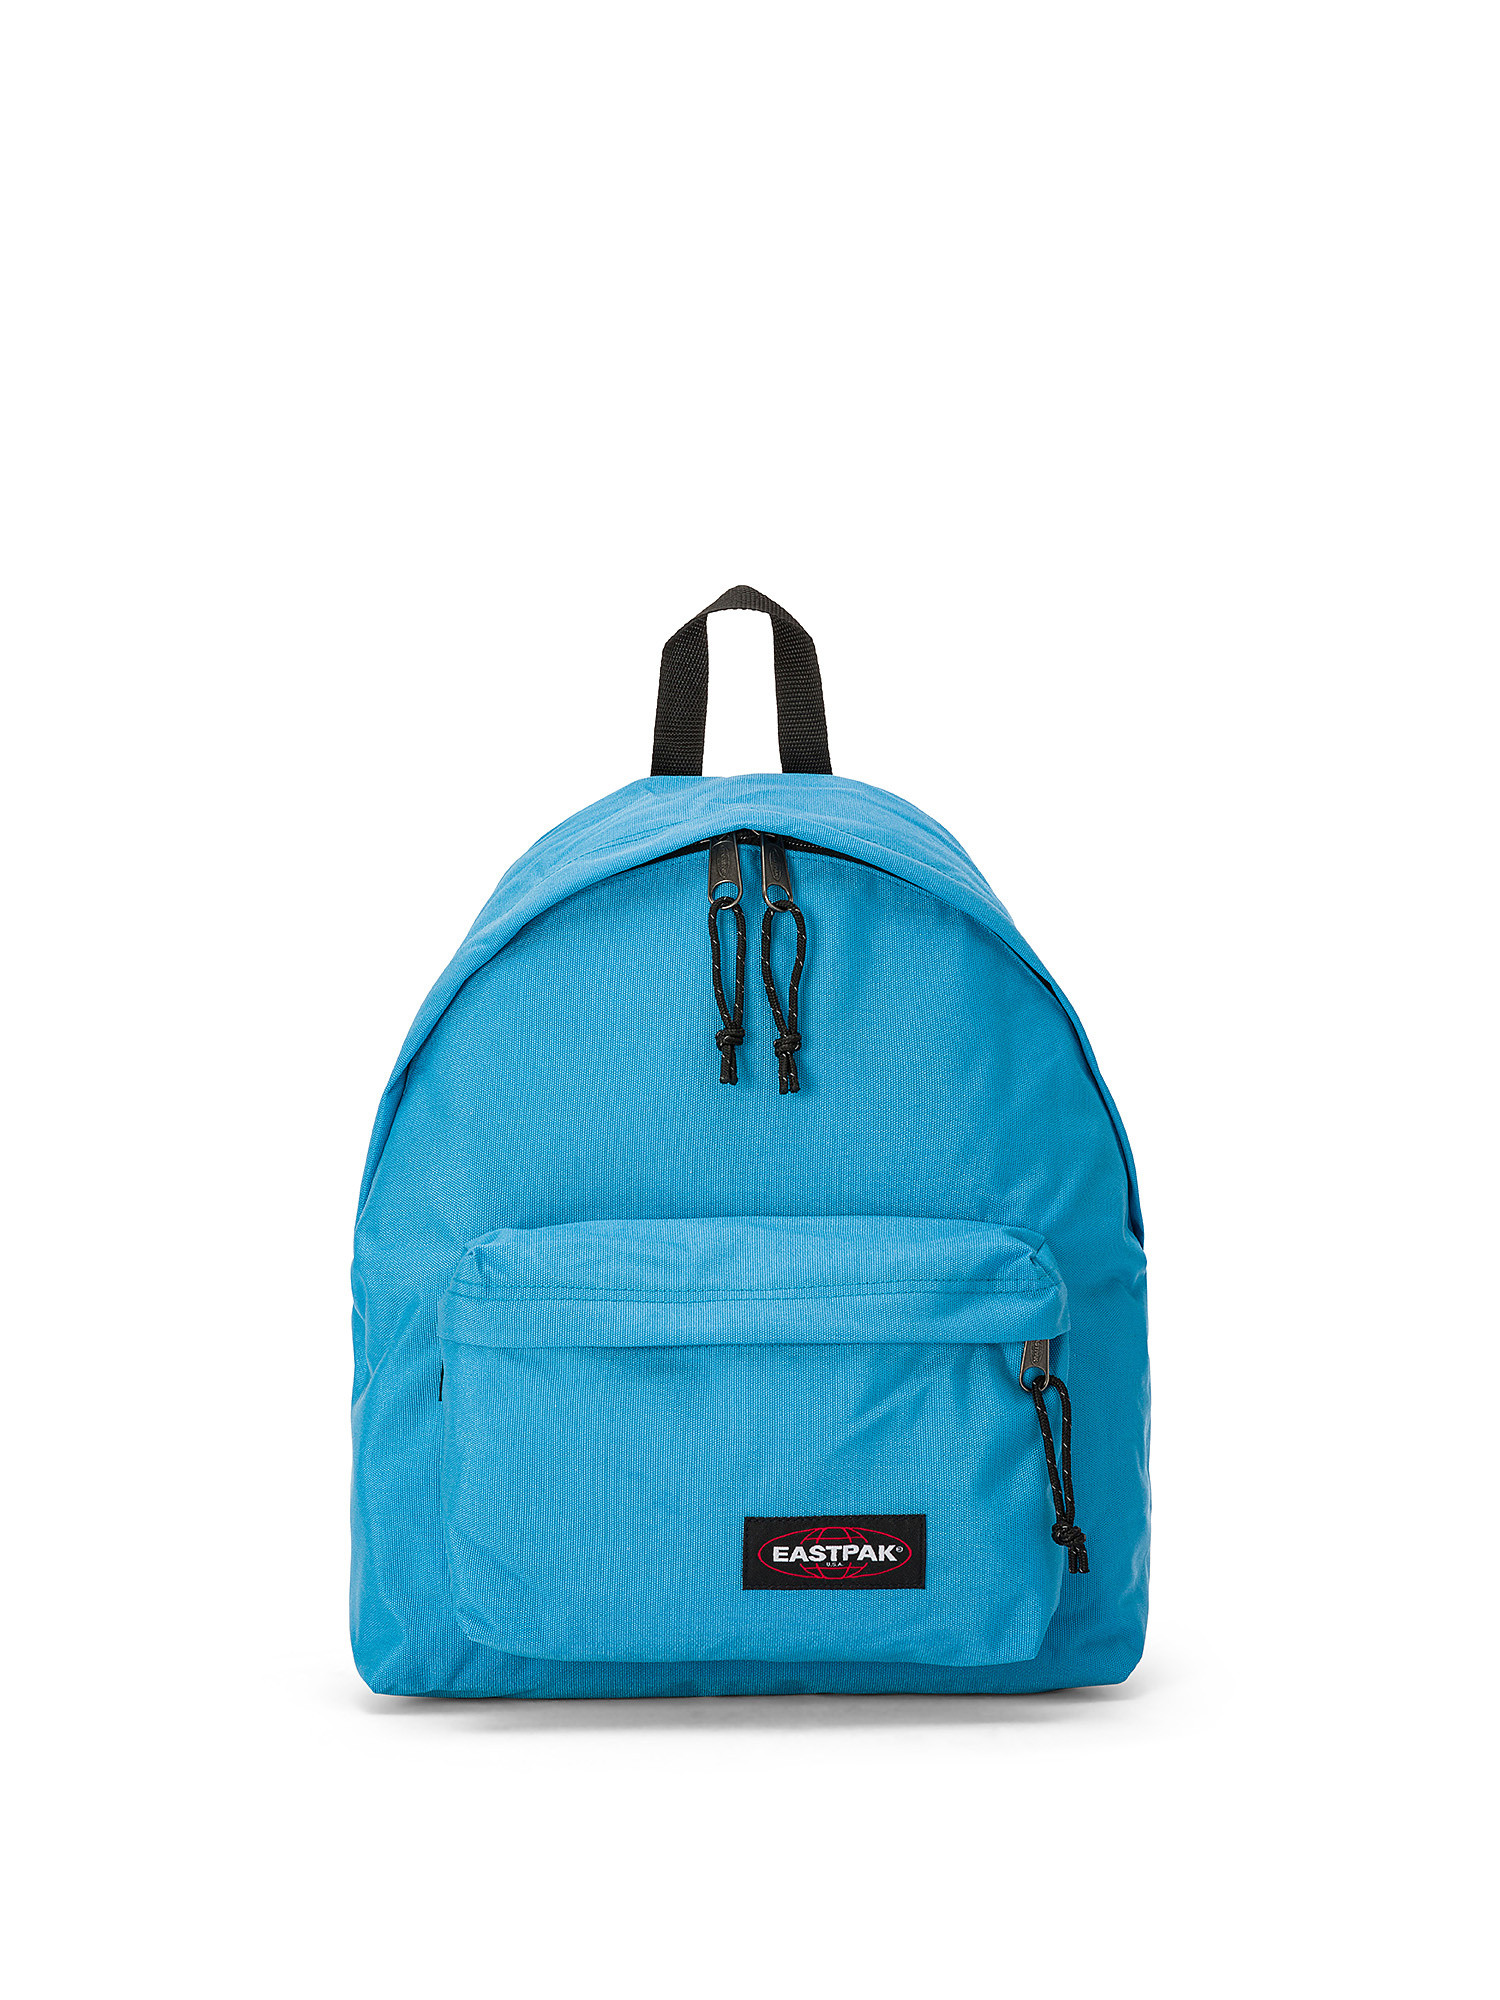 Eastpak - Padded Pak'r Broad Blue backpack, Blue Dark, large image number 0